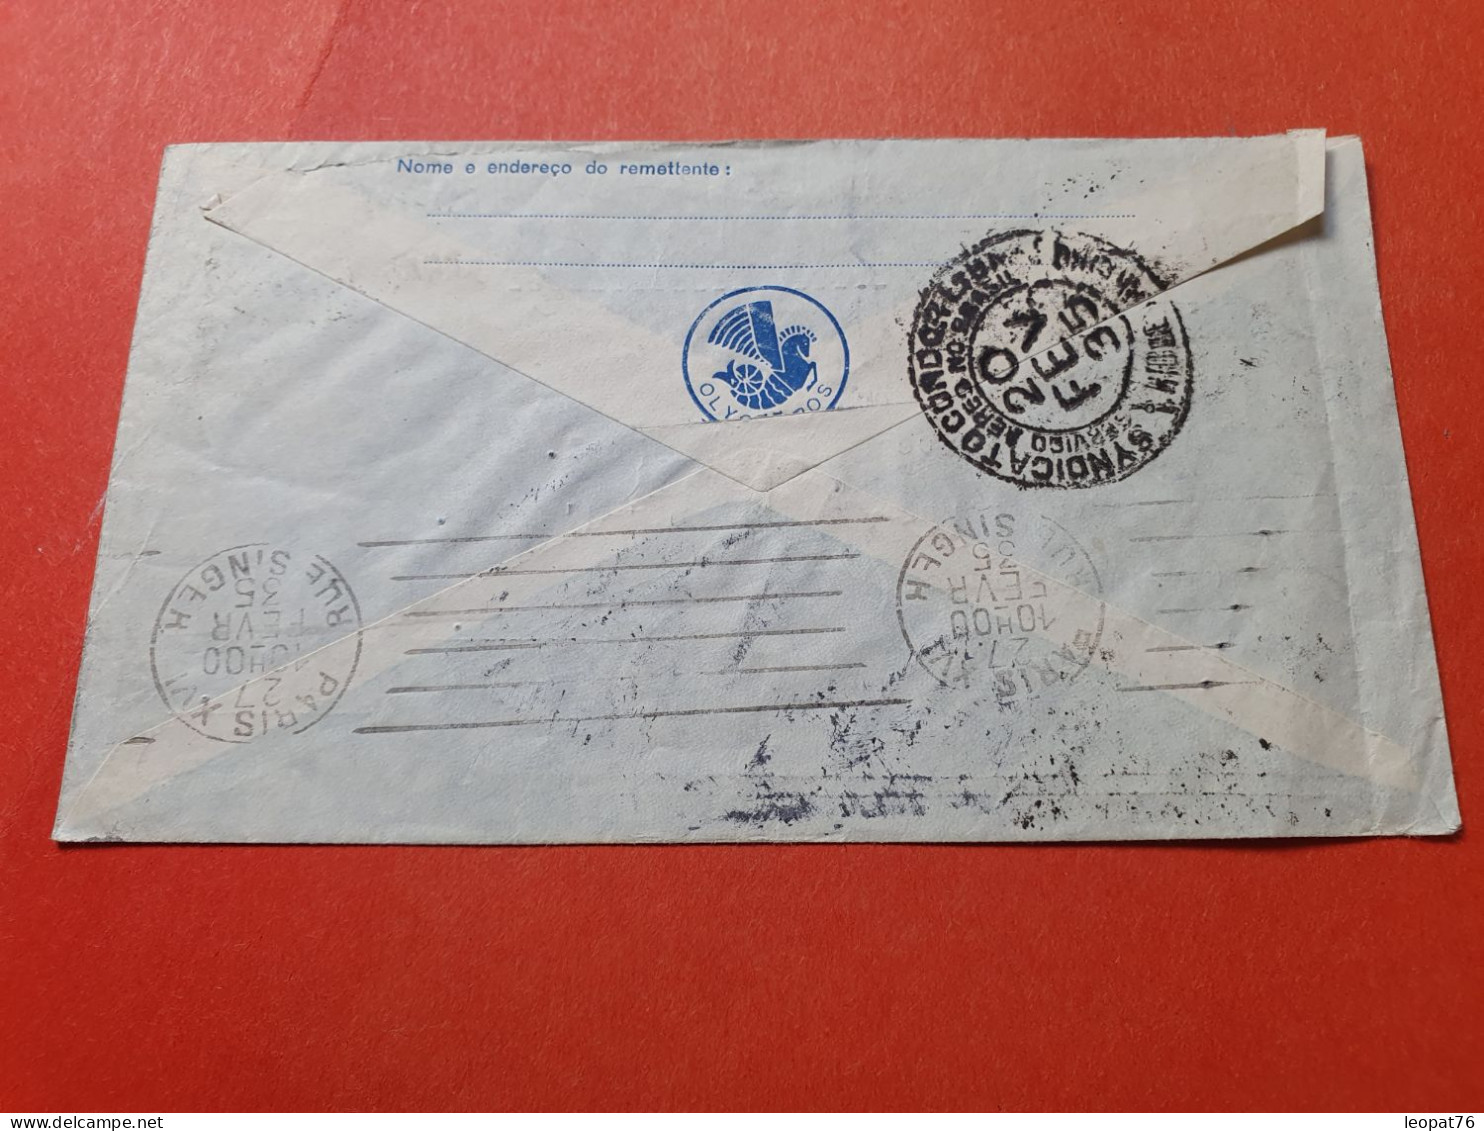 Brésil - Enveloppe Pour La France Par Avion Par Cie Lufthansa En 1935  - Réf 3373 - Brieven En Documenten